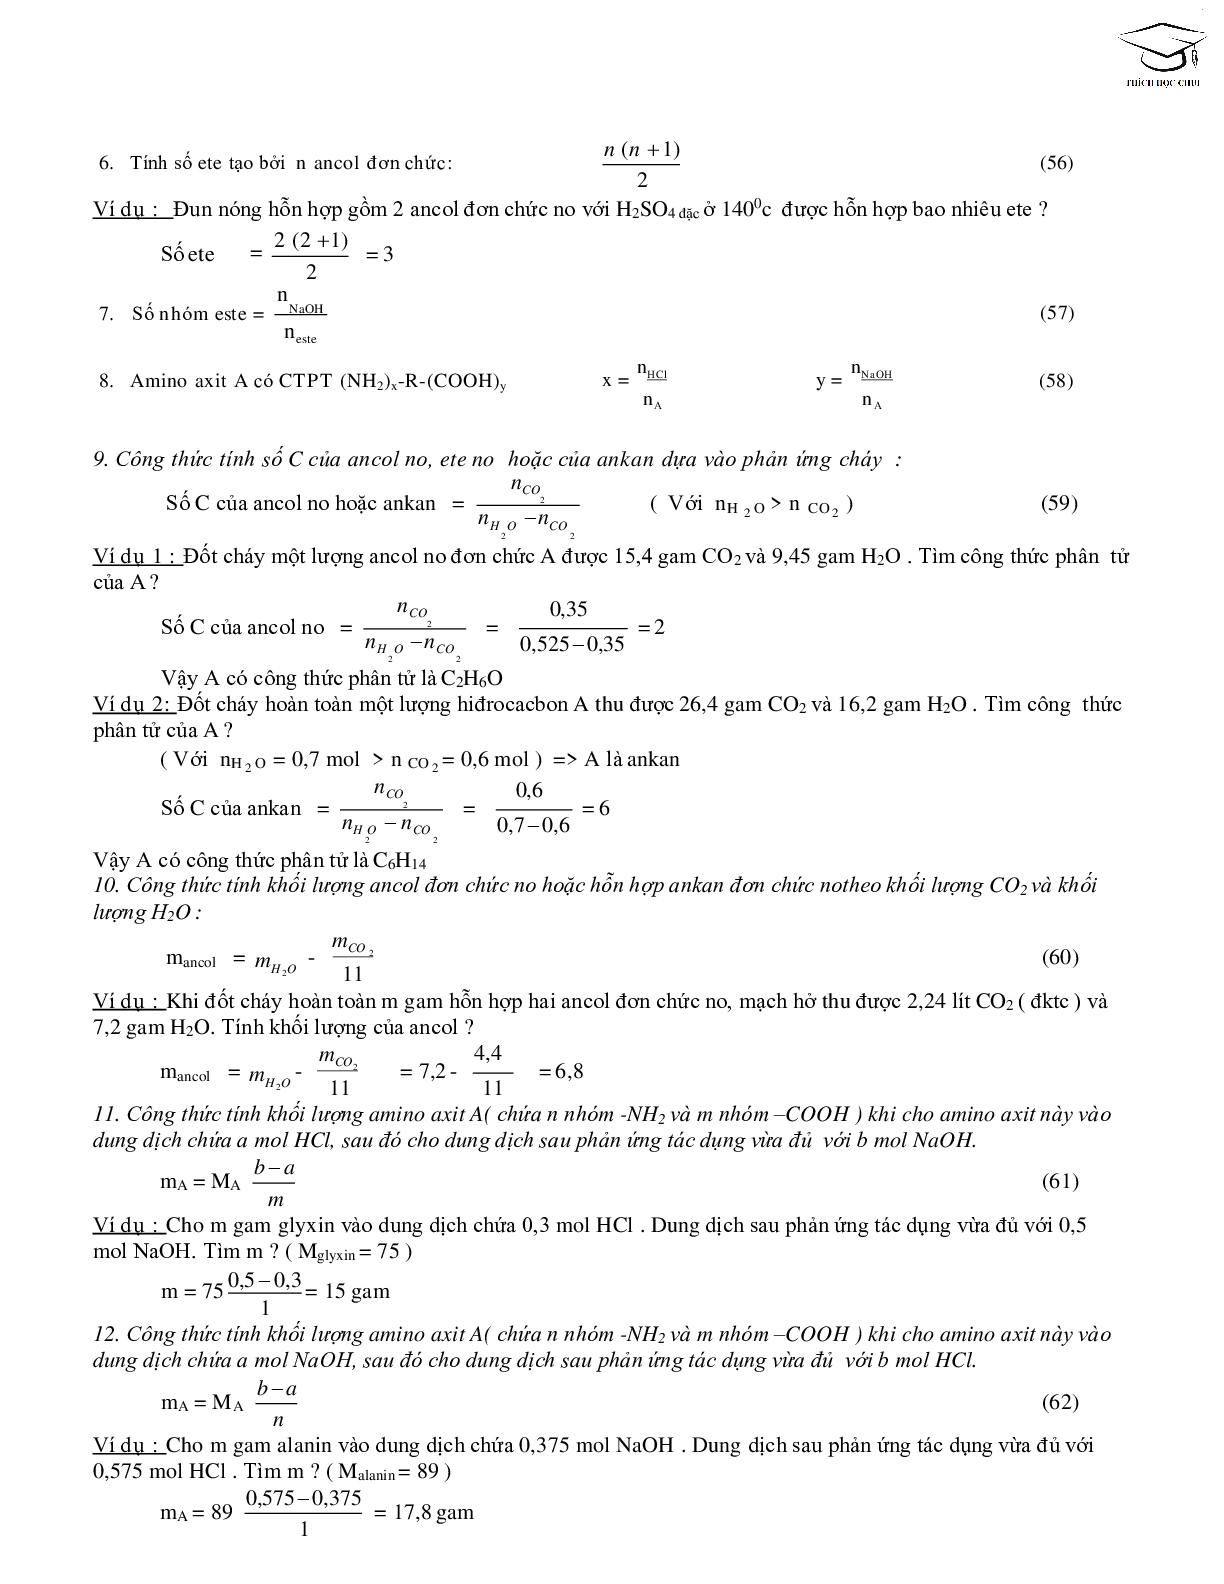 68 công thức giải nhanh bài tập trắc nghiệm môn hóa học lớp 12 (trang 8)